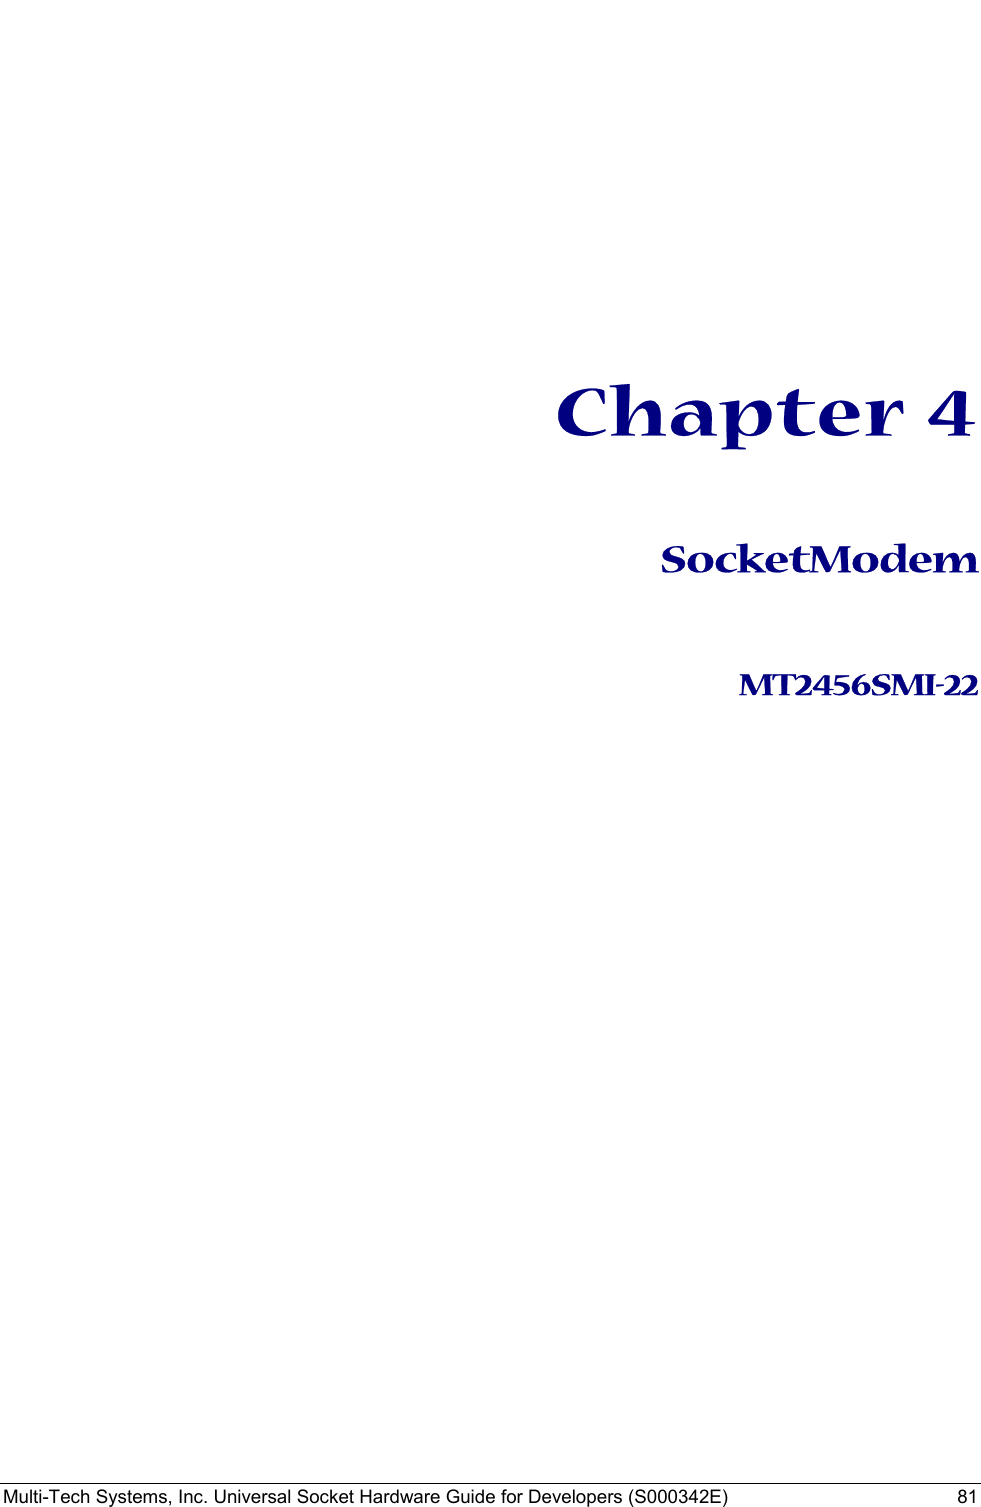  Multi-Tech Systems, Inc. Universal Socket Hardware Guide for Developers (S000342E)  81      Chapter 4  SocketModem   MT2456SMI-22  